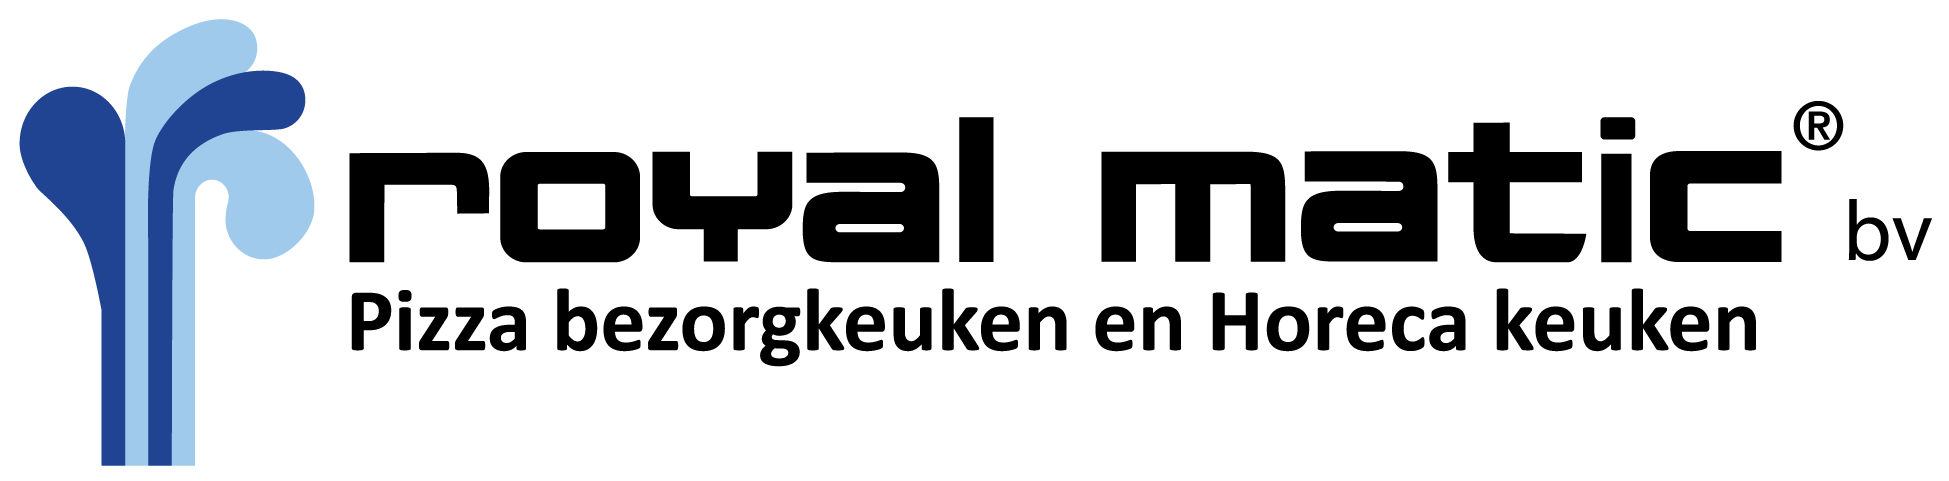 Royal Matic logo